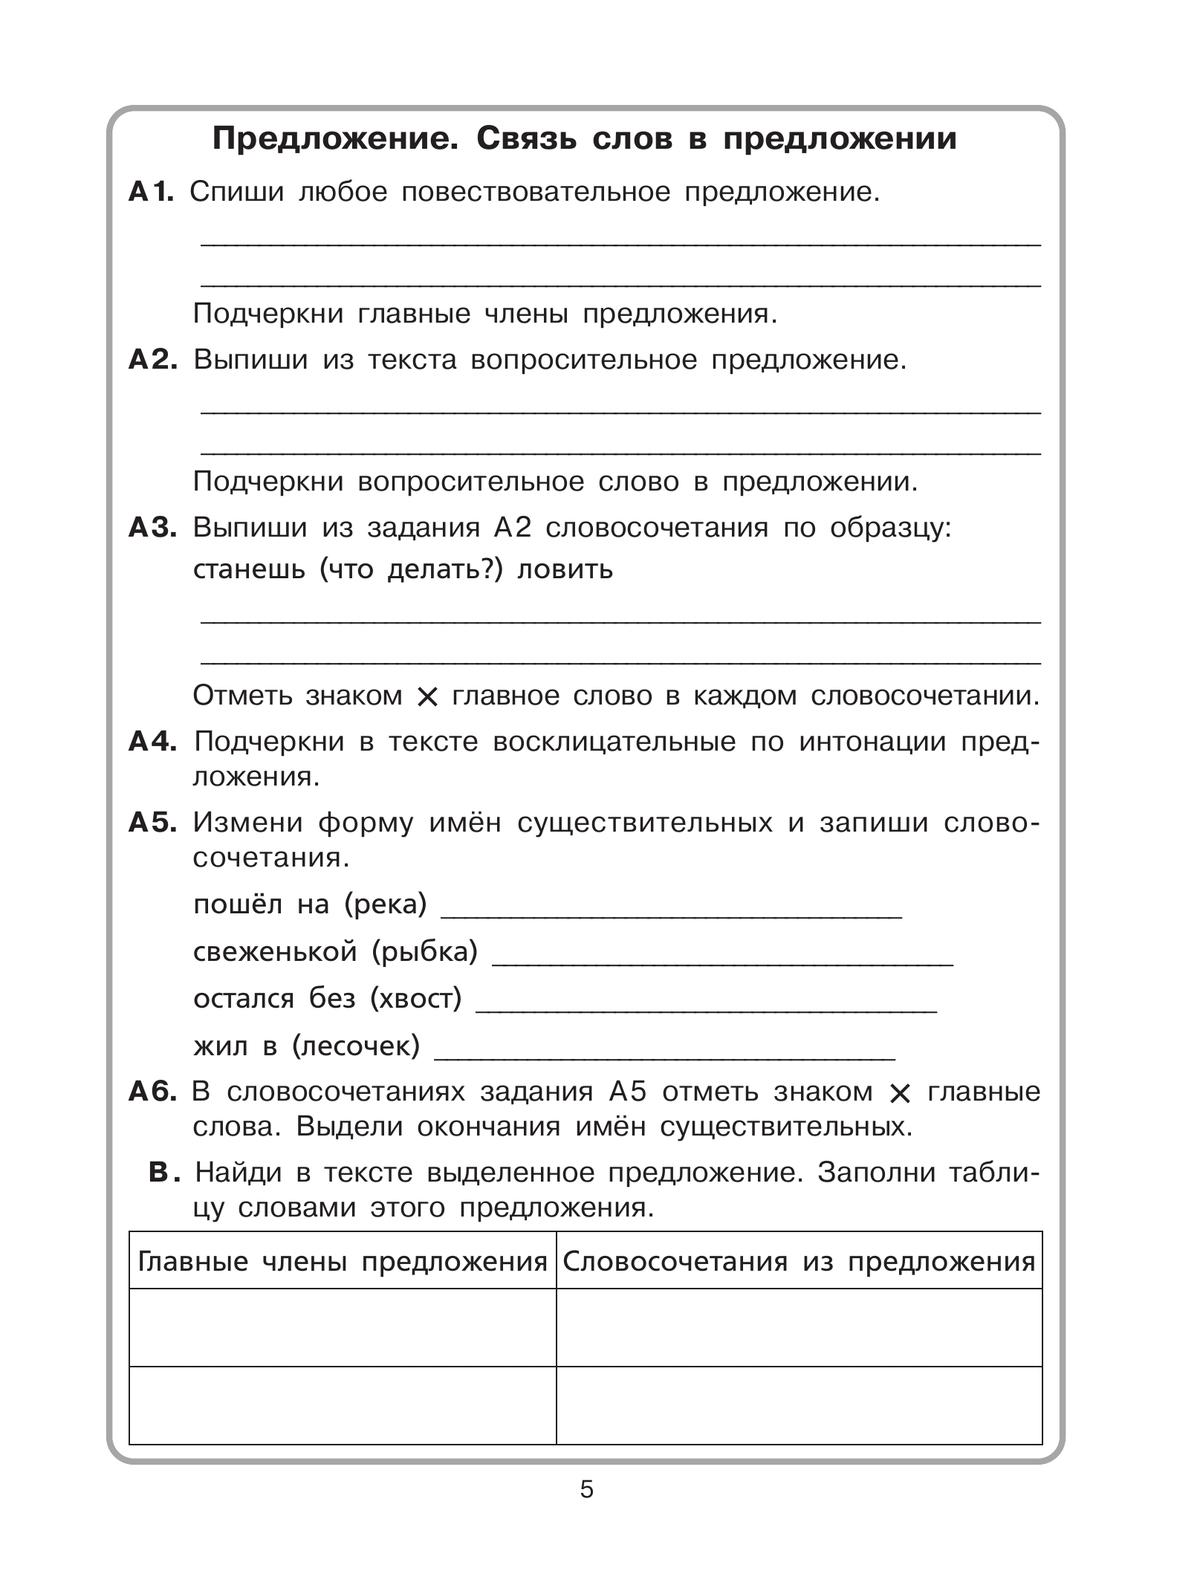 Комплексный тренажер по литературному чтению и русскому языку для 4 класса 7